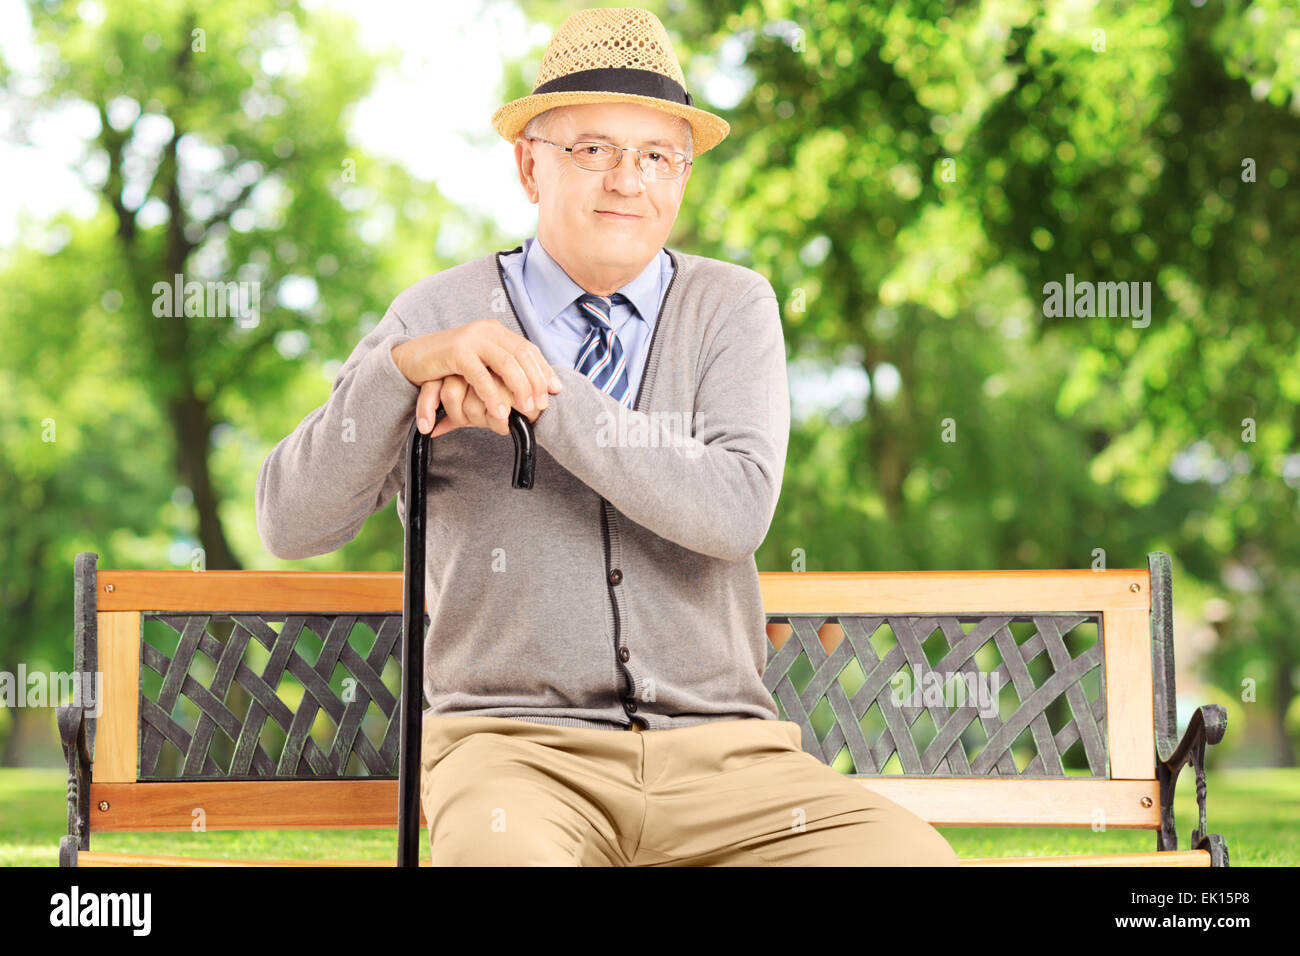 Canne Senior assis sur un banc en bois et looking at camera Banque D'Images